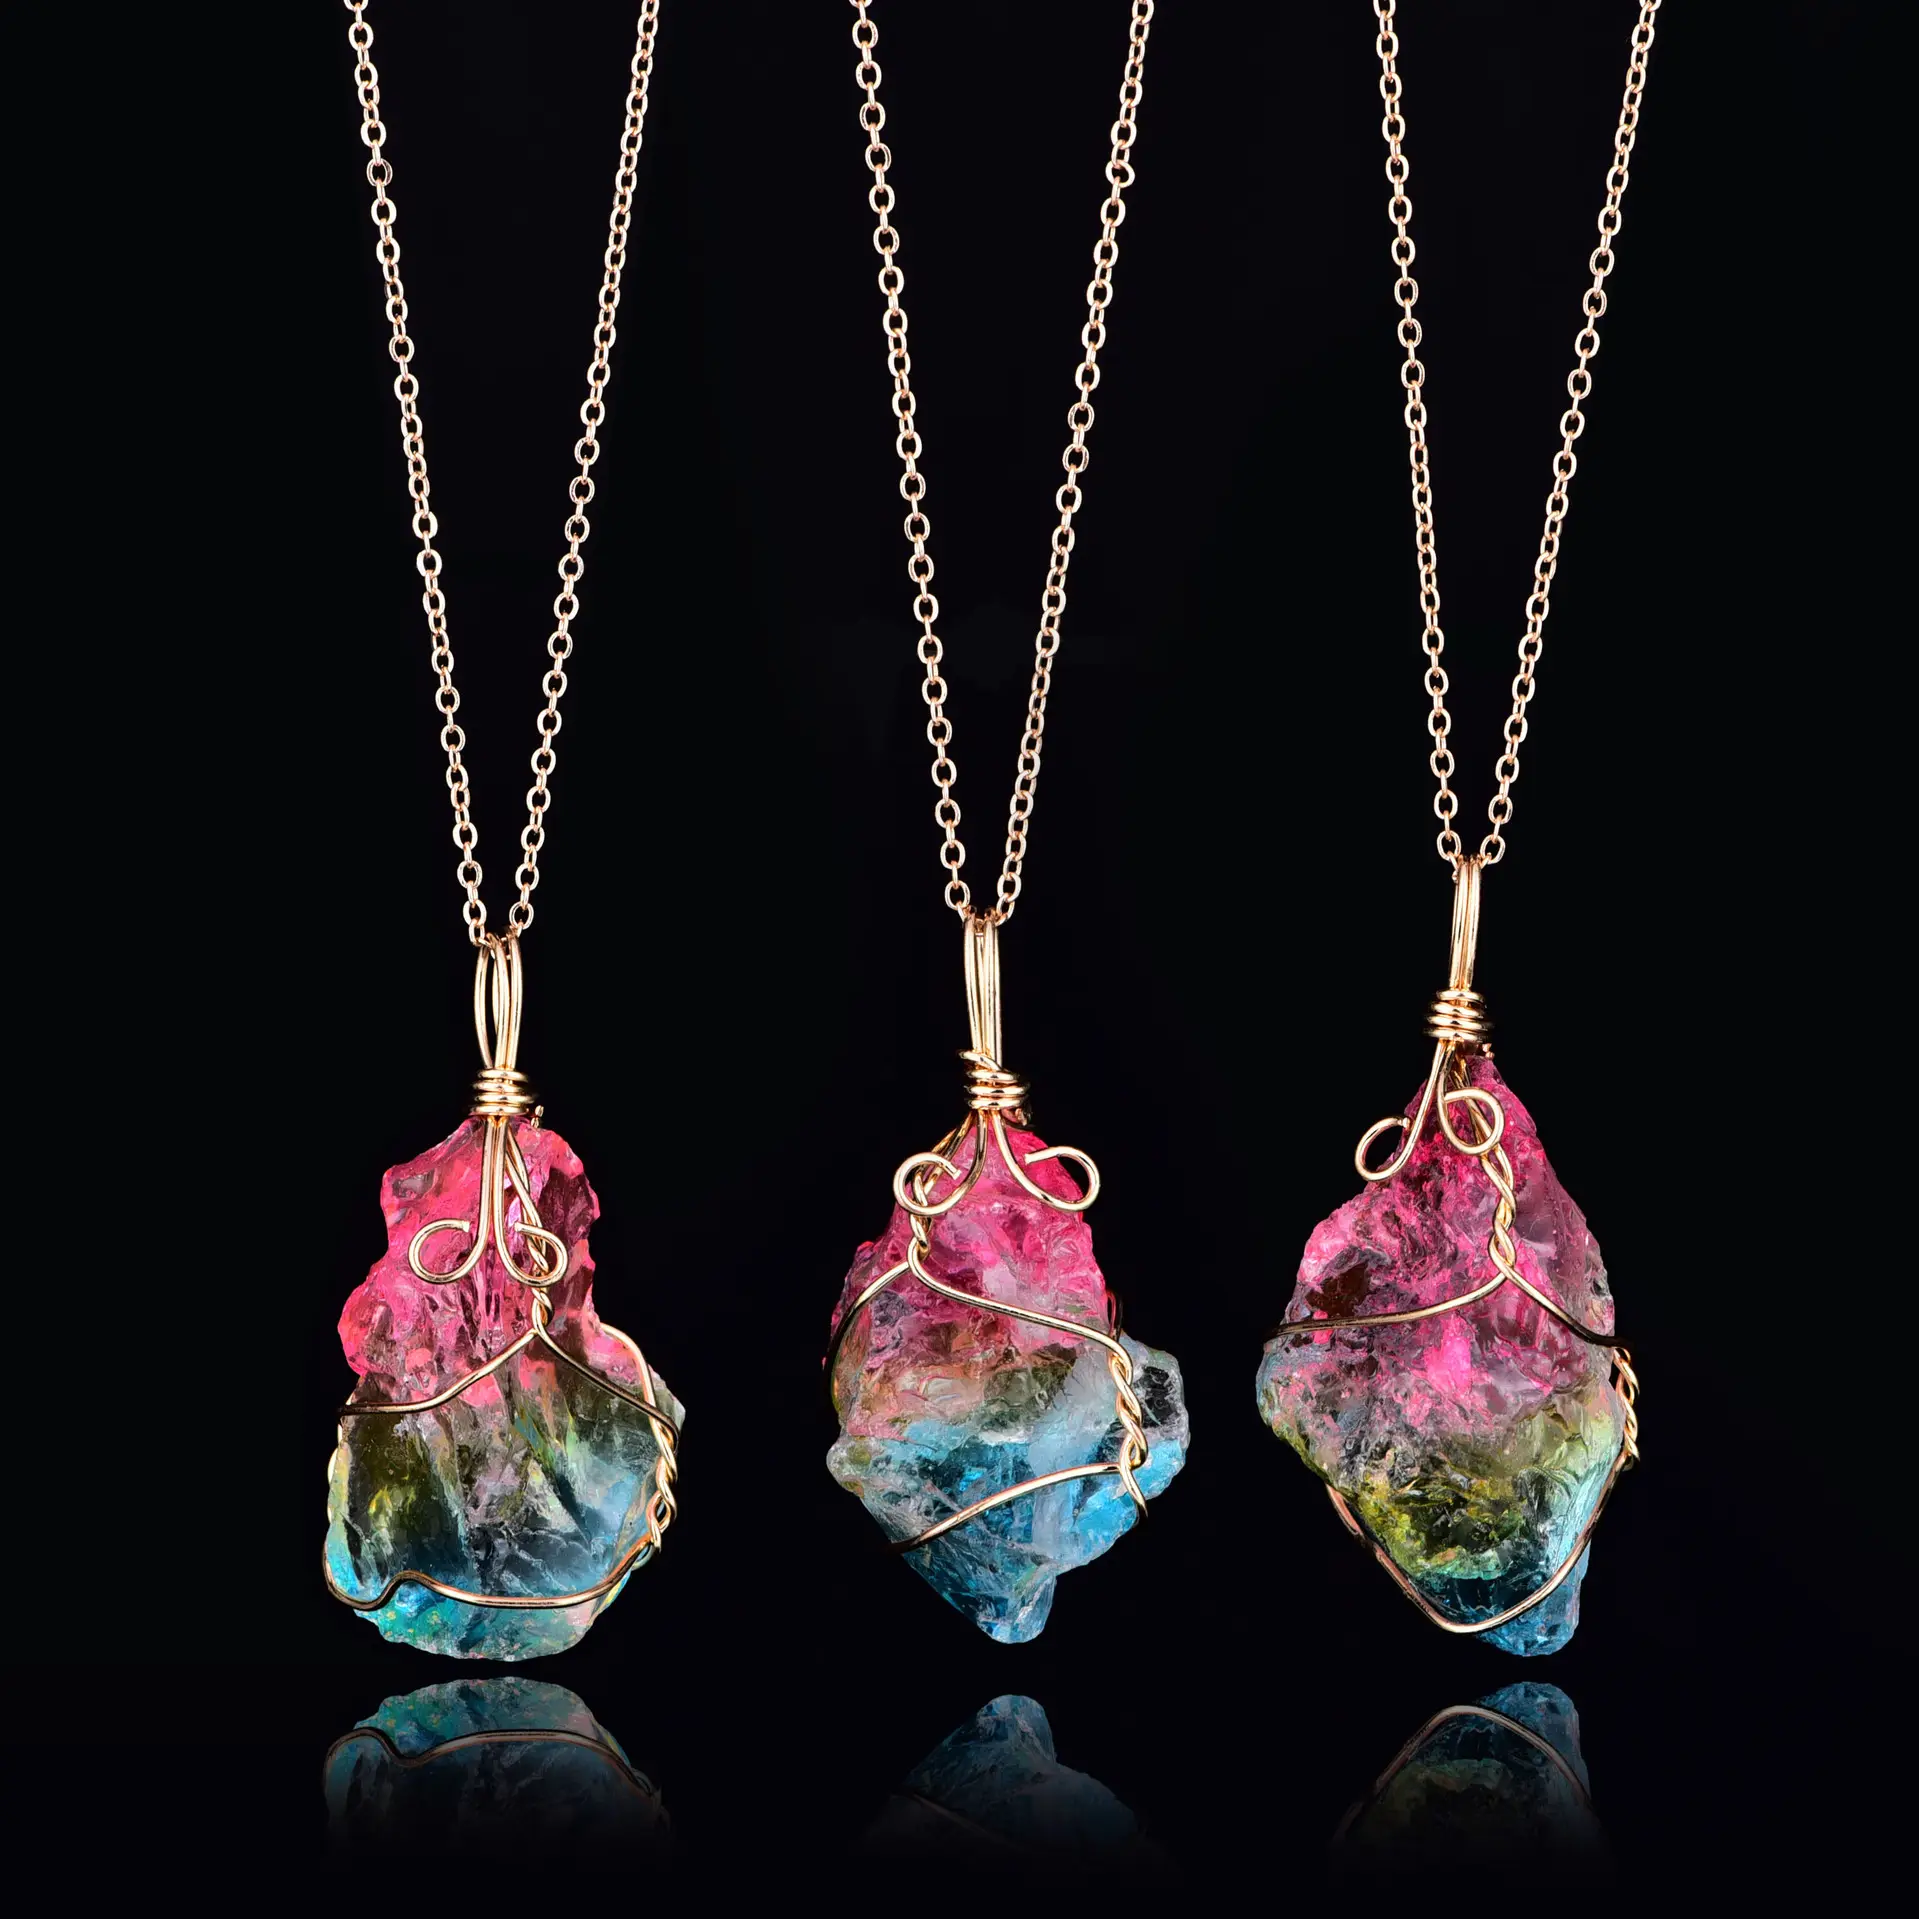 Mehrfarbige geometrische Naturstein kette Golddraht umwickelt Regenbogen Kristall Anhänger Halskette Kristalls chmuck